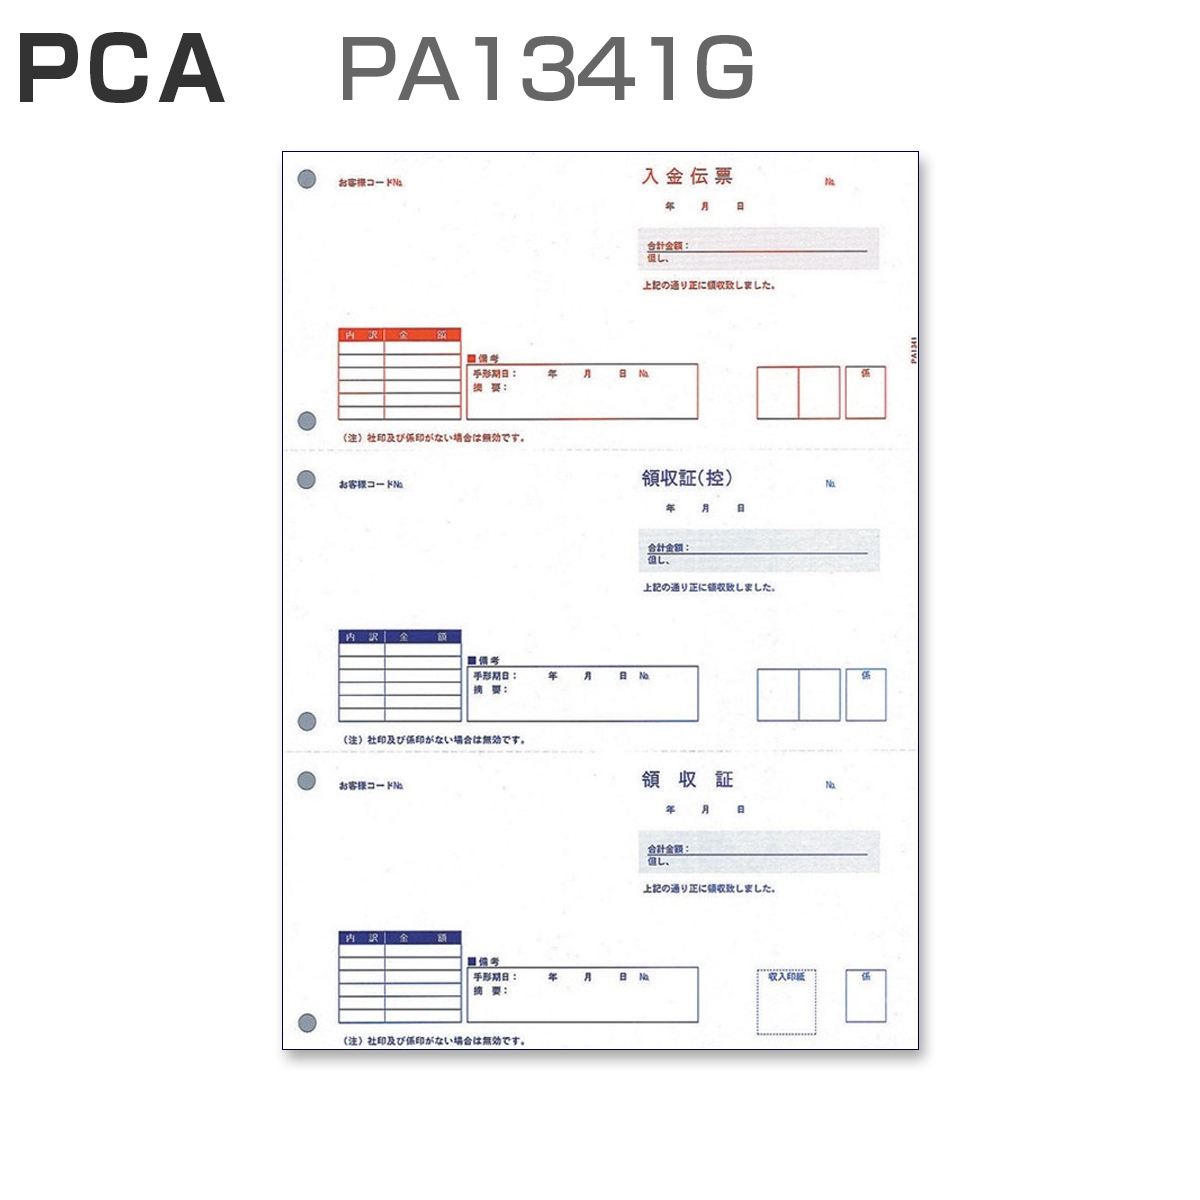 パナシア】 PCA PA1341G 領収証 (500枚)